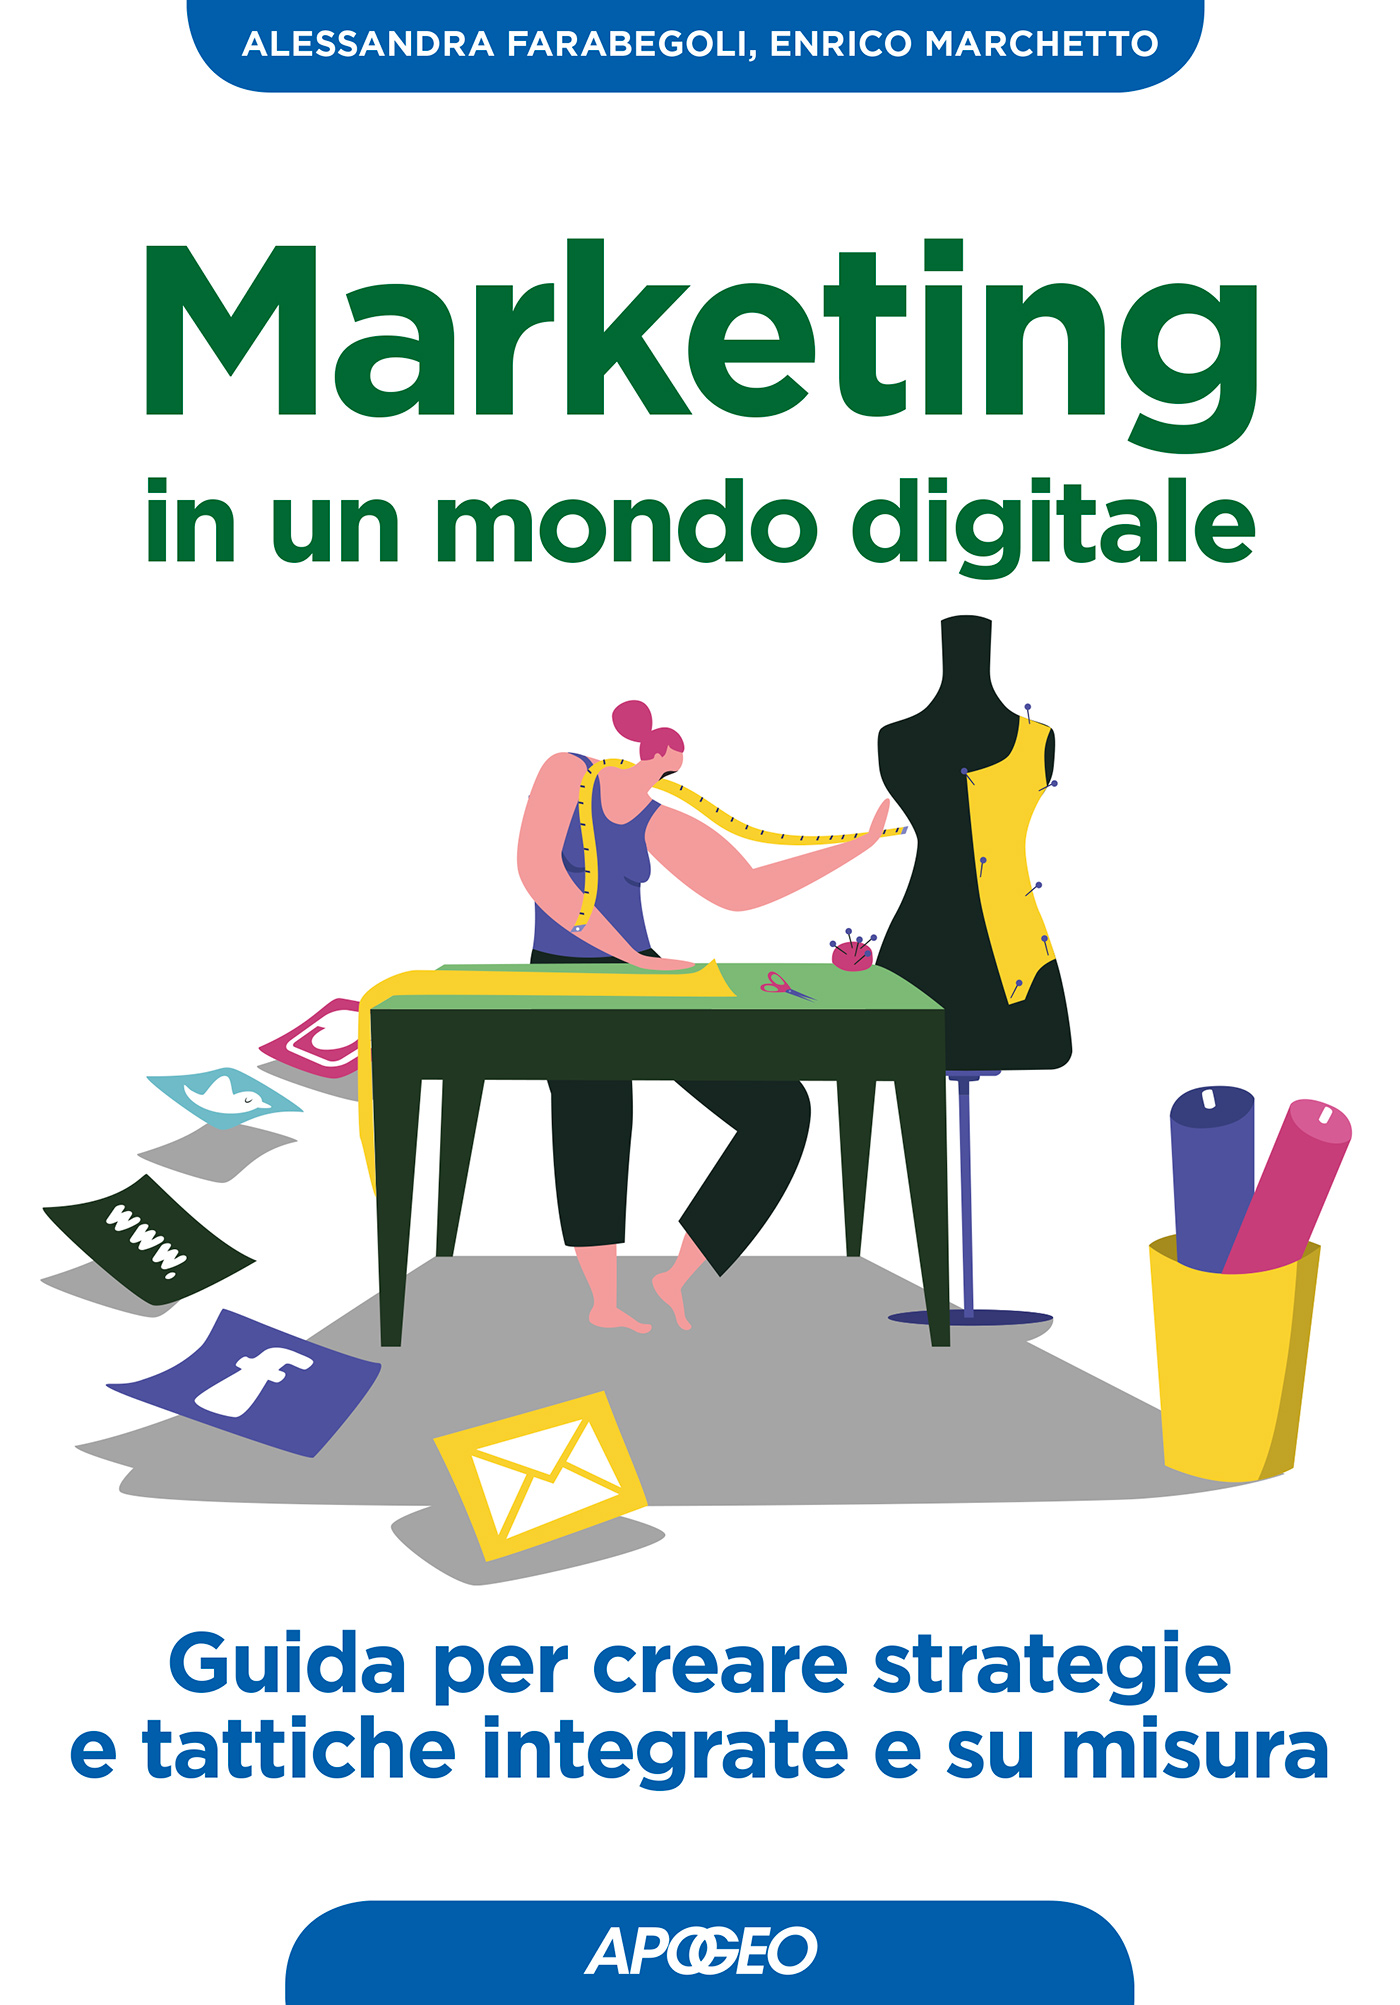 Marketing in un mondo digitale, di Alessandra Farabegoli ed Enrico Marchetto